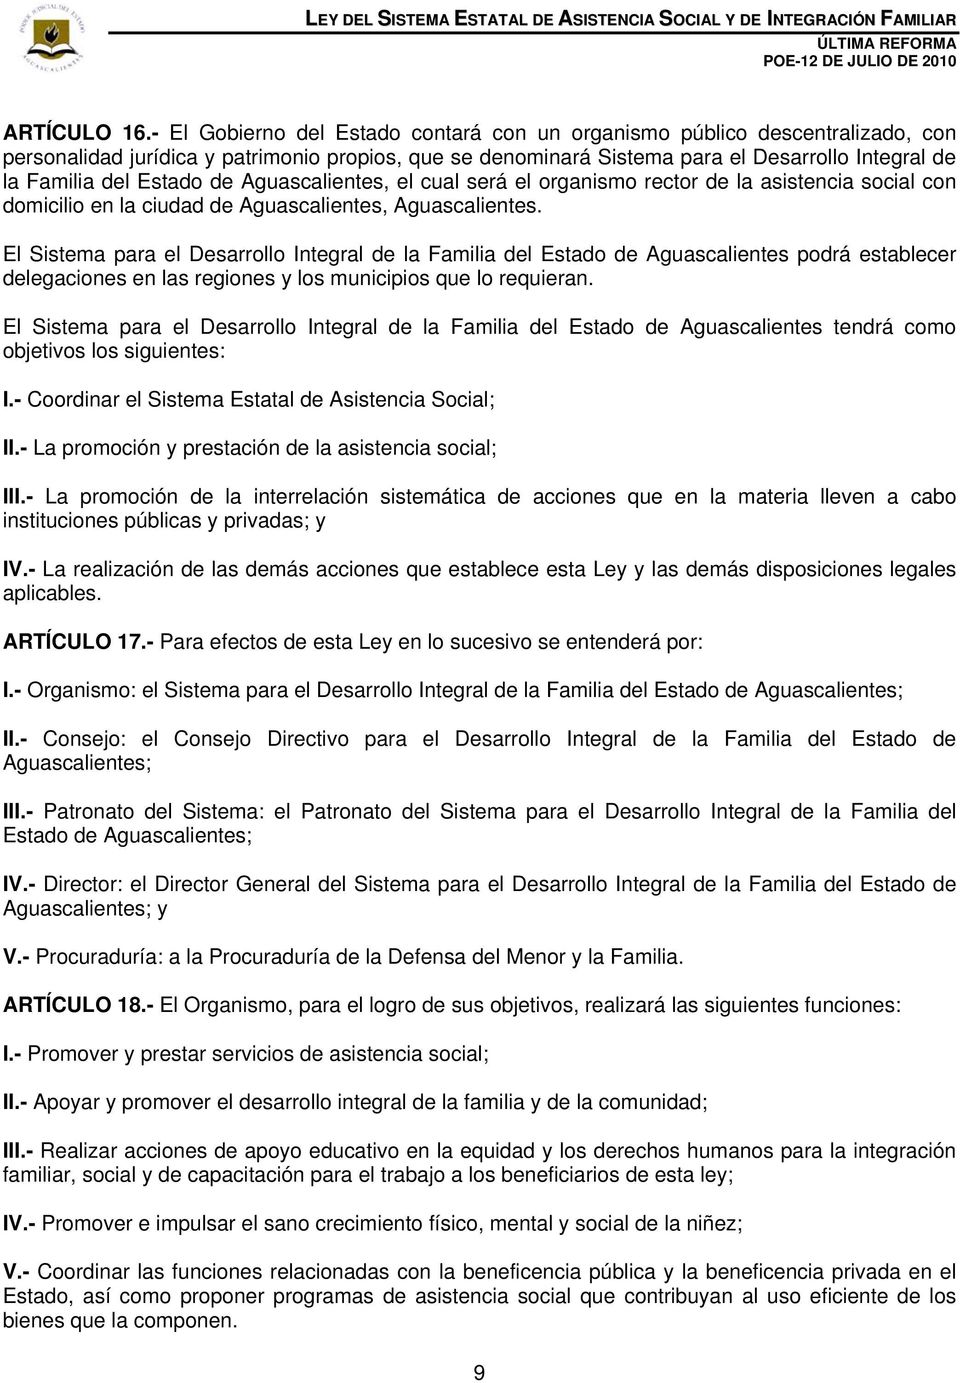 Estado de Aguascalientes, el cual será el organismo rector de la asistencia social con domicilio en la ciudad de Aguascalientes, Aguascalientes.